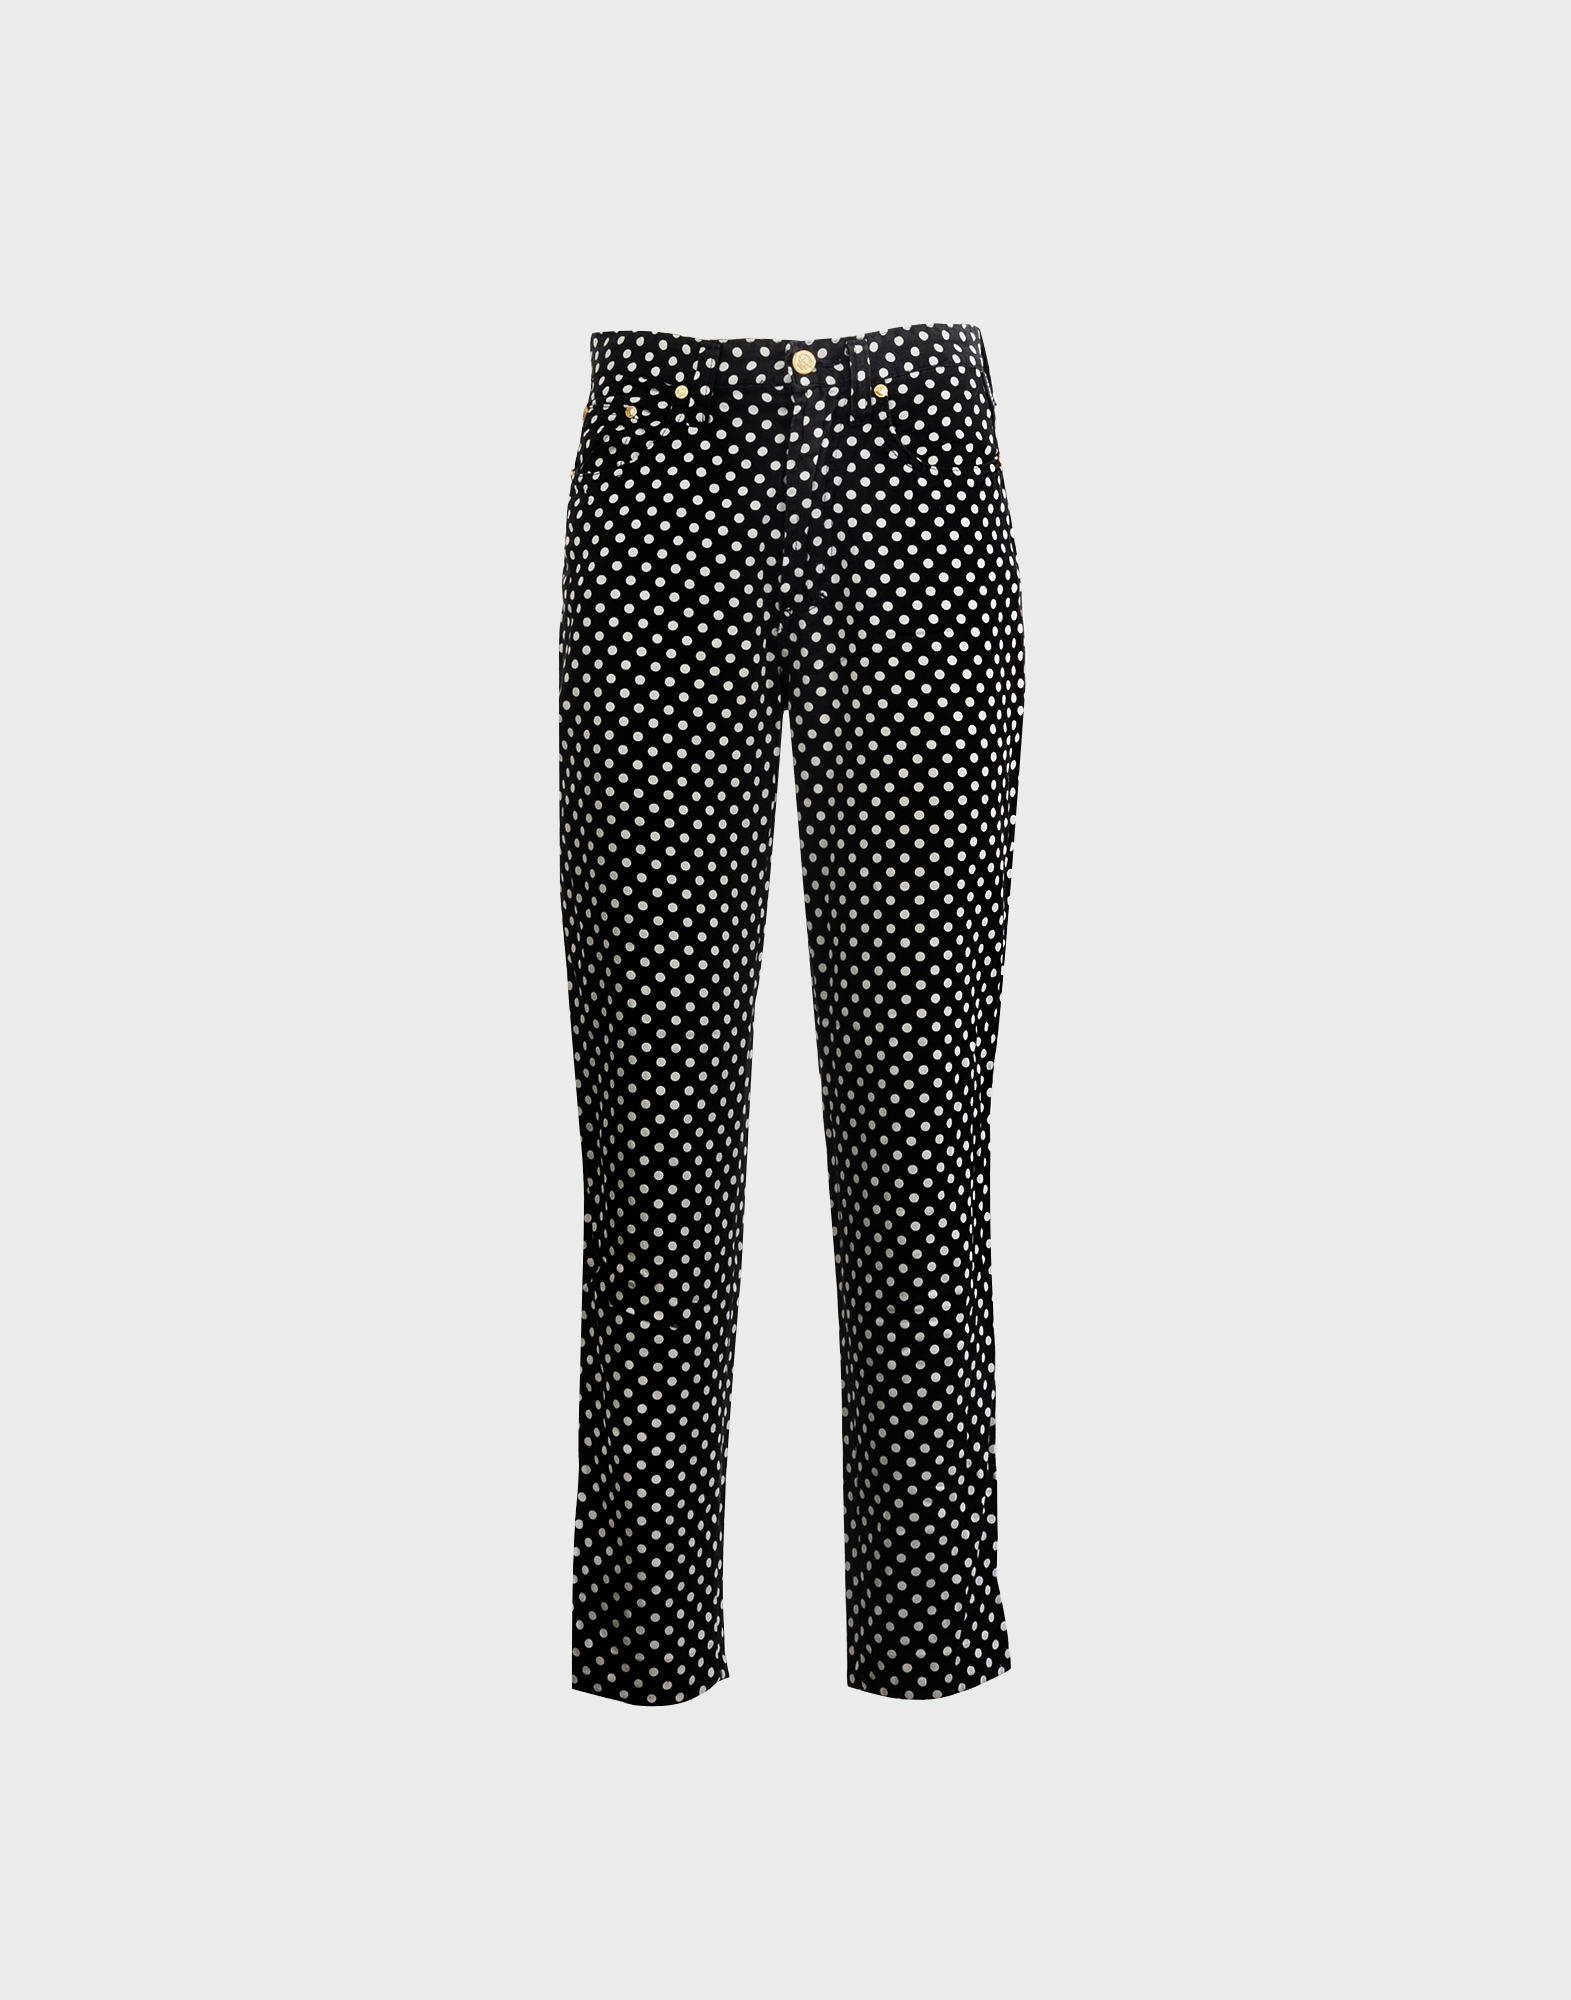 black women's pants with white polka dot pattern